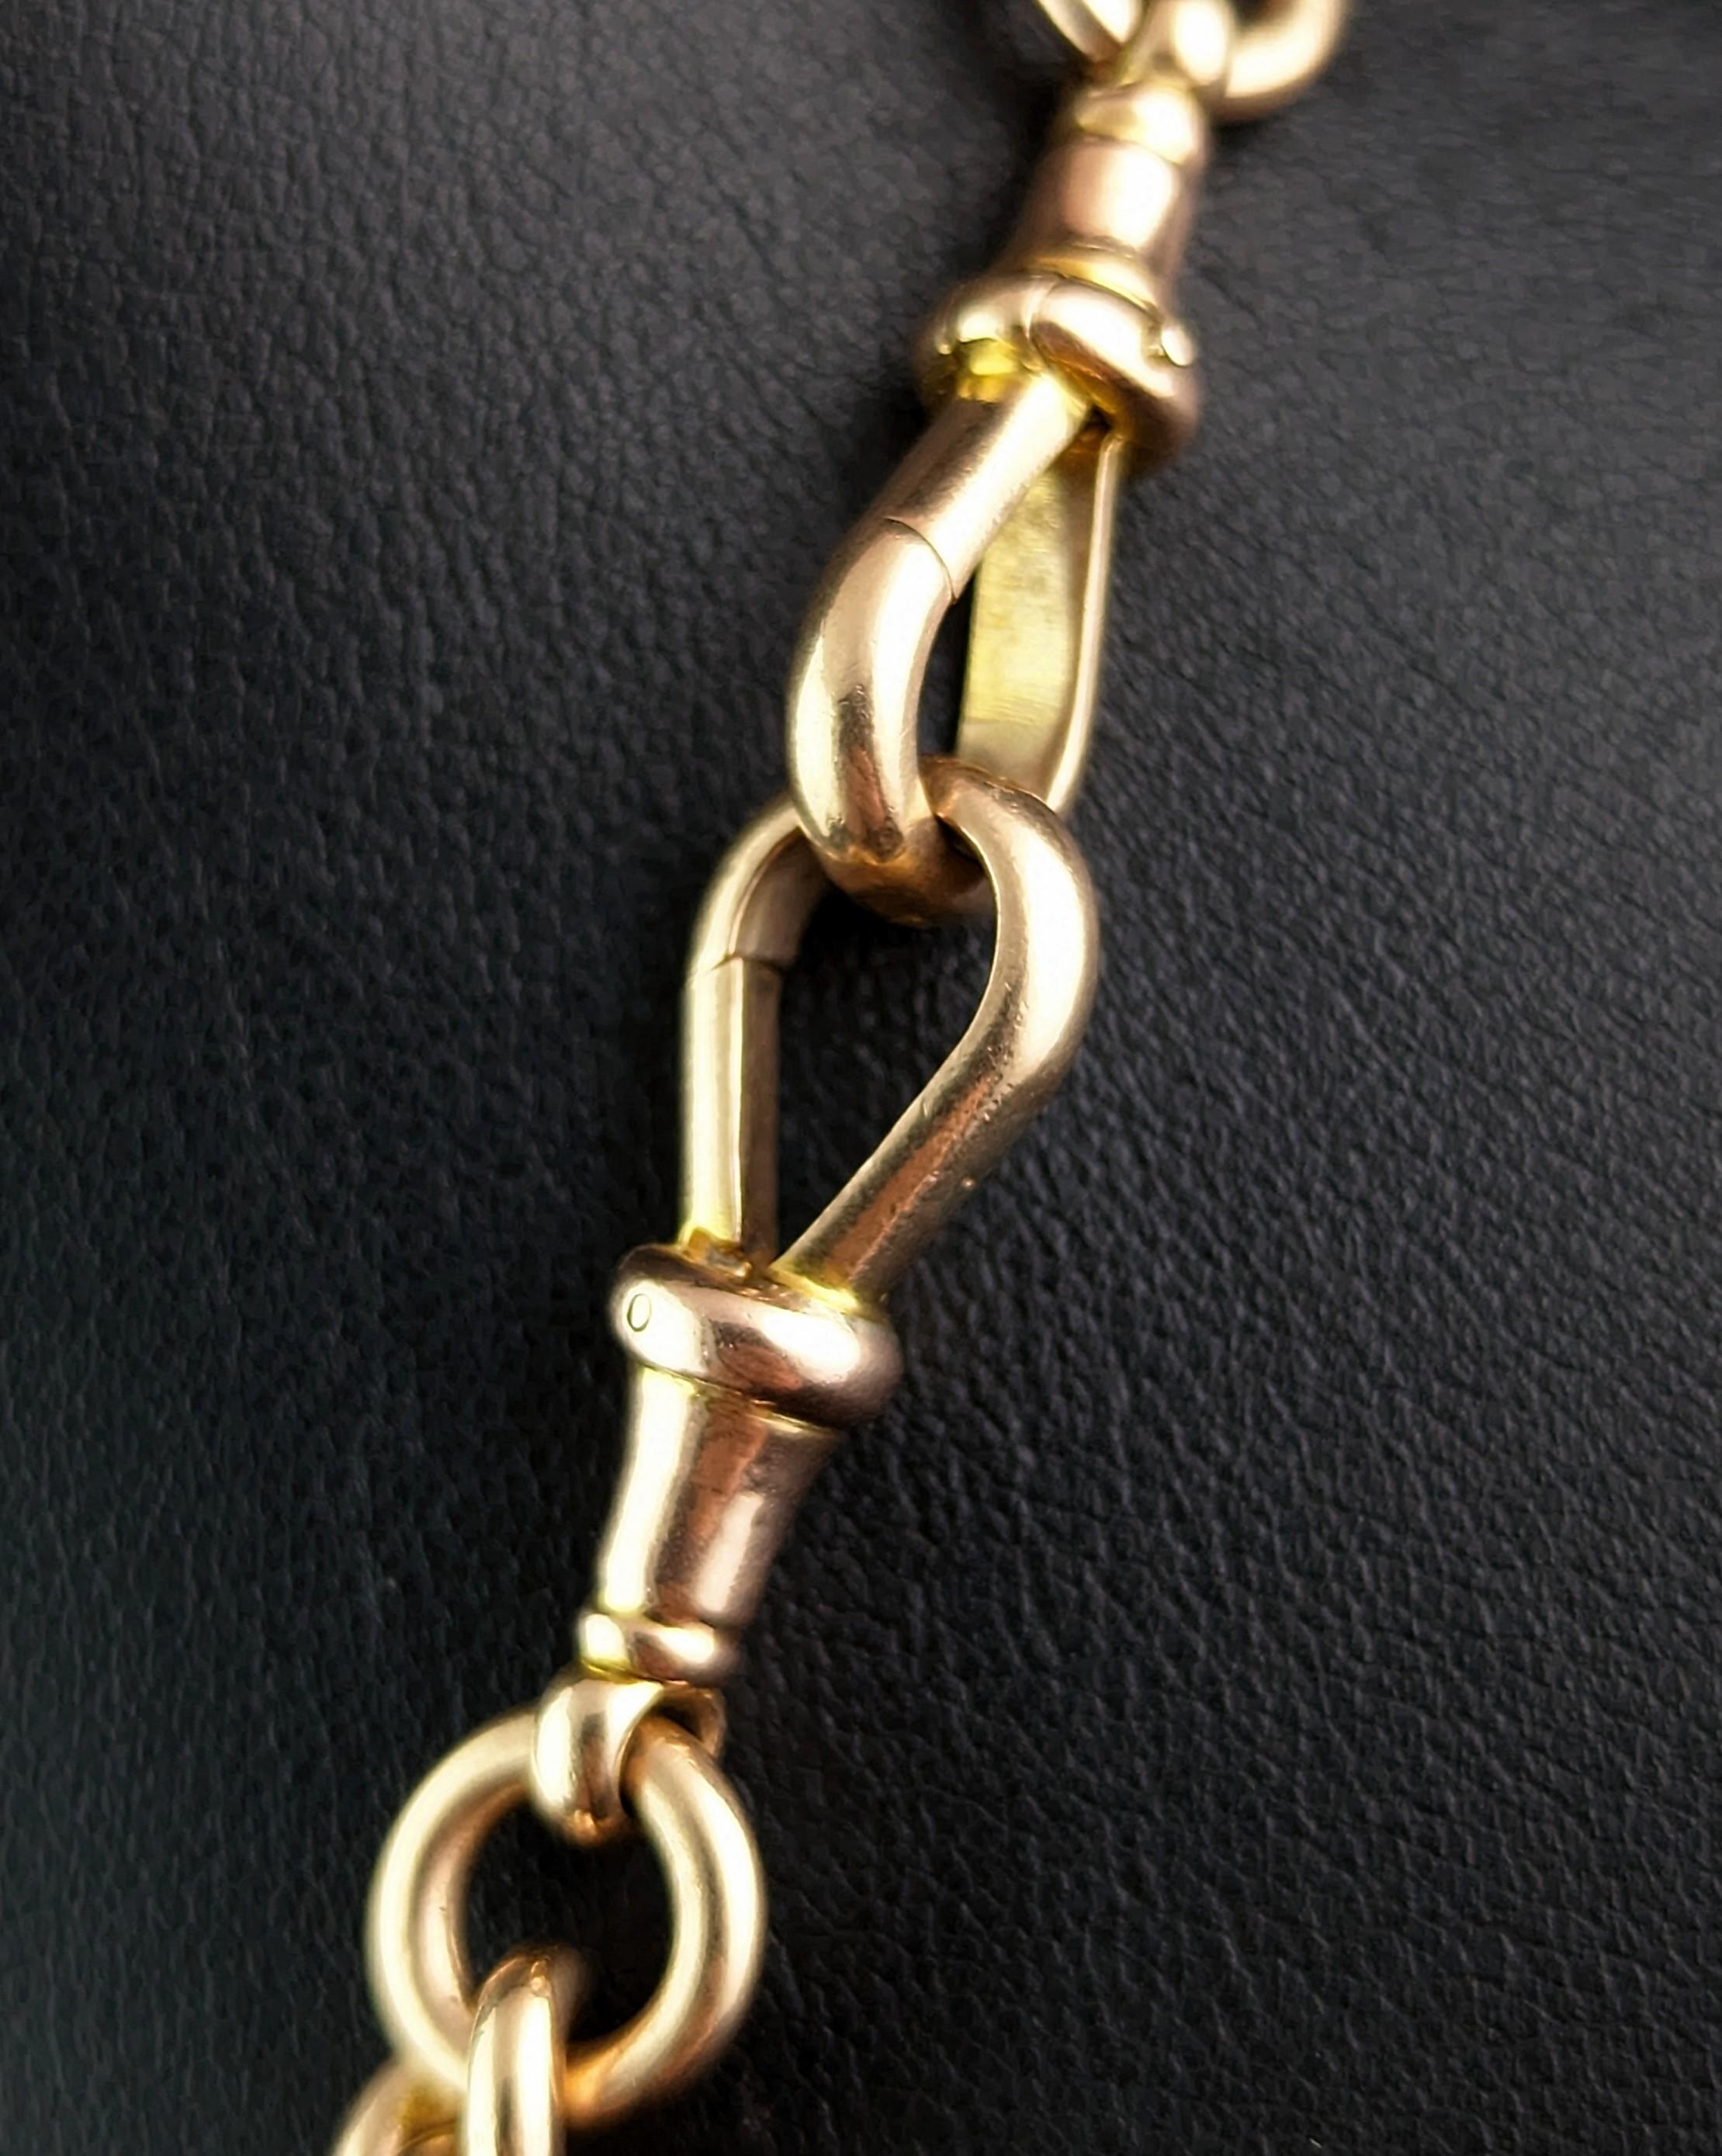 Antique 9k gold Albert chain necklace, watch chain, Heavy  8